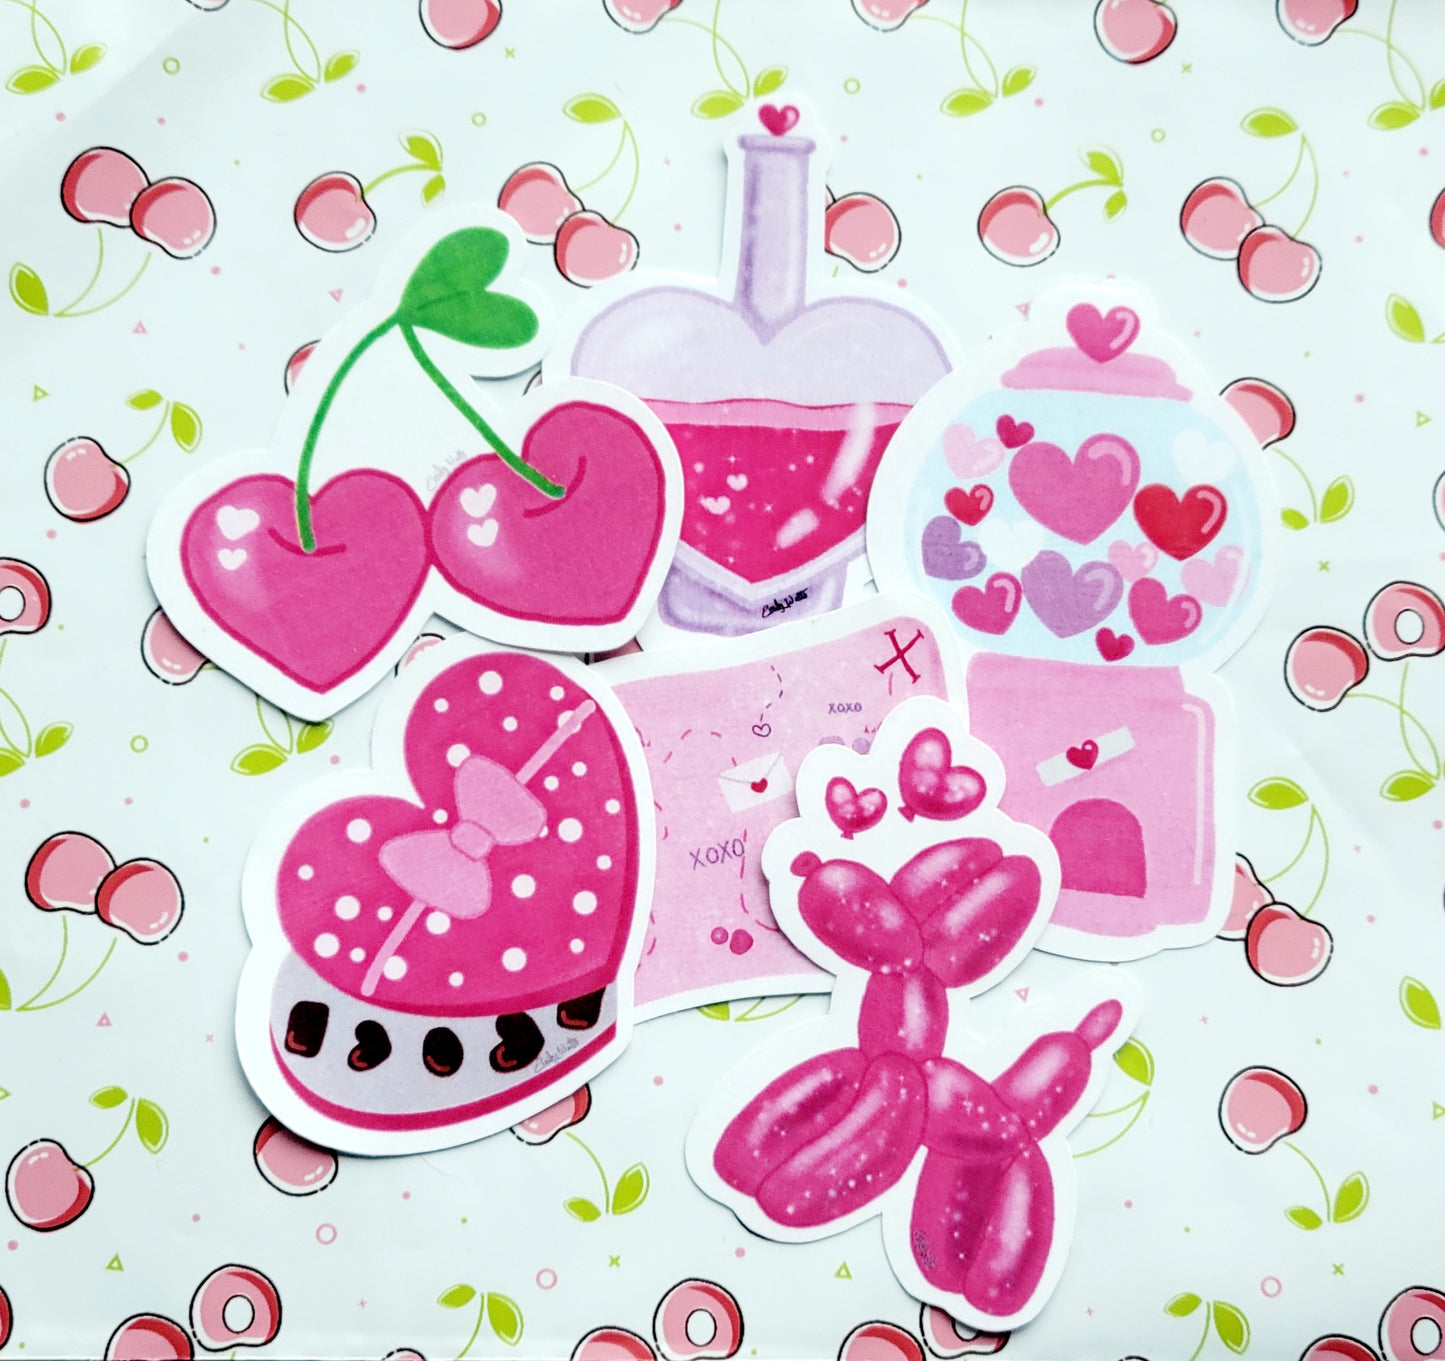 Valentine's Day Sticker Set of 6